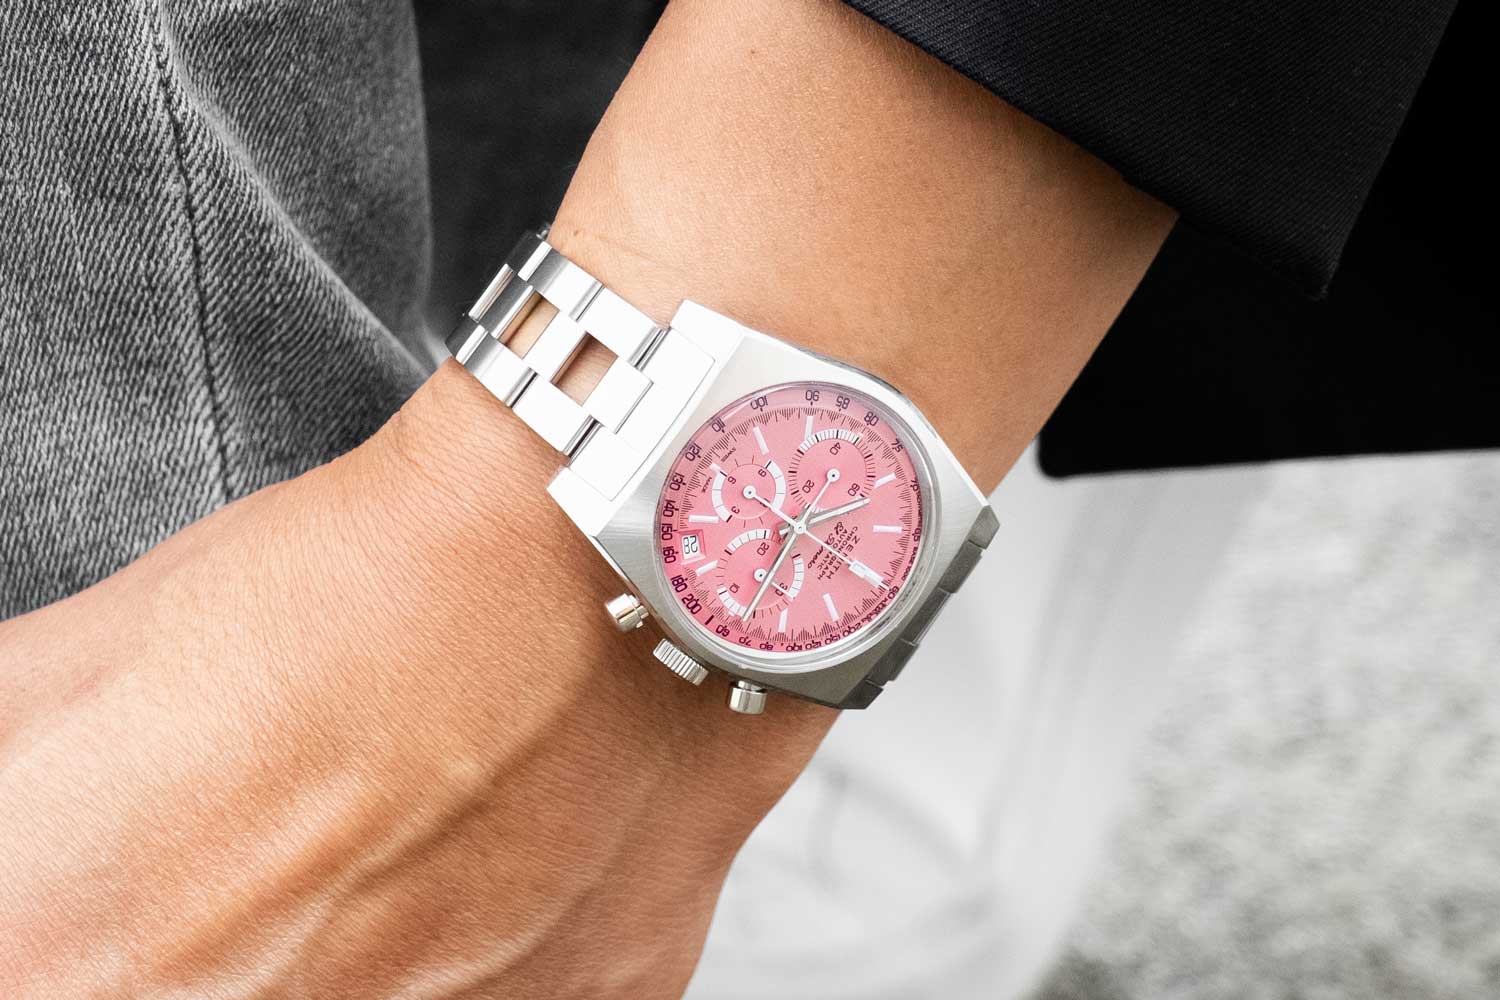 Khám phá những chiếc đồng hồ màu hồng độc đáo xuất hiện tại Dự án The Pink Dial